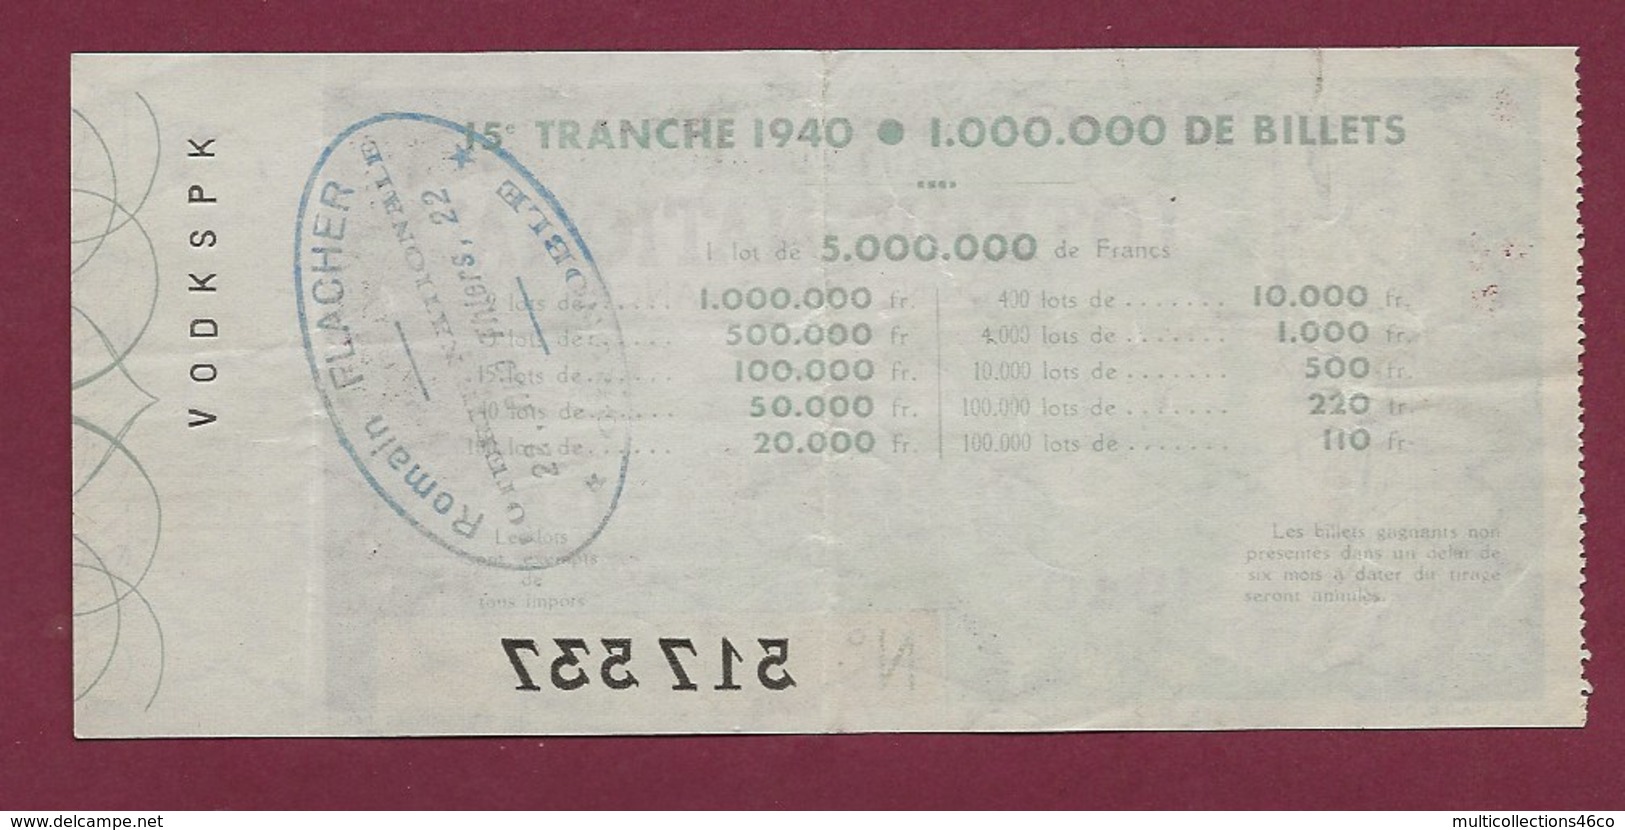 150819B - BILLET LOTERIE NATIONALE 1940 100 FRANCS 15ème TR - Rome Antique Romaine Village Cruche - Billetes De Lotería